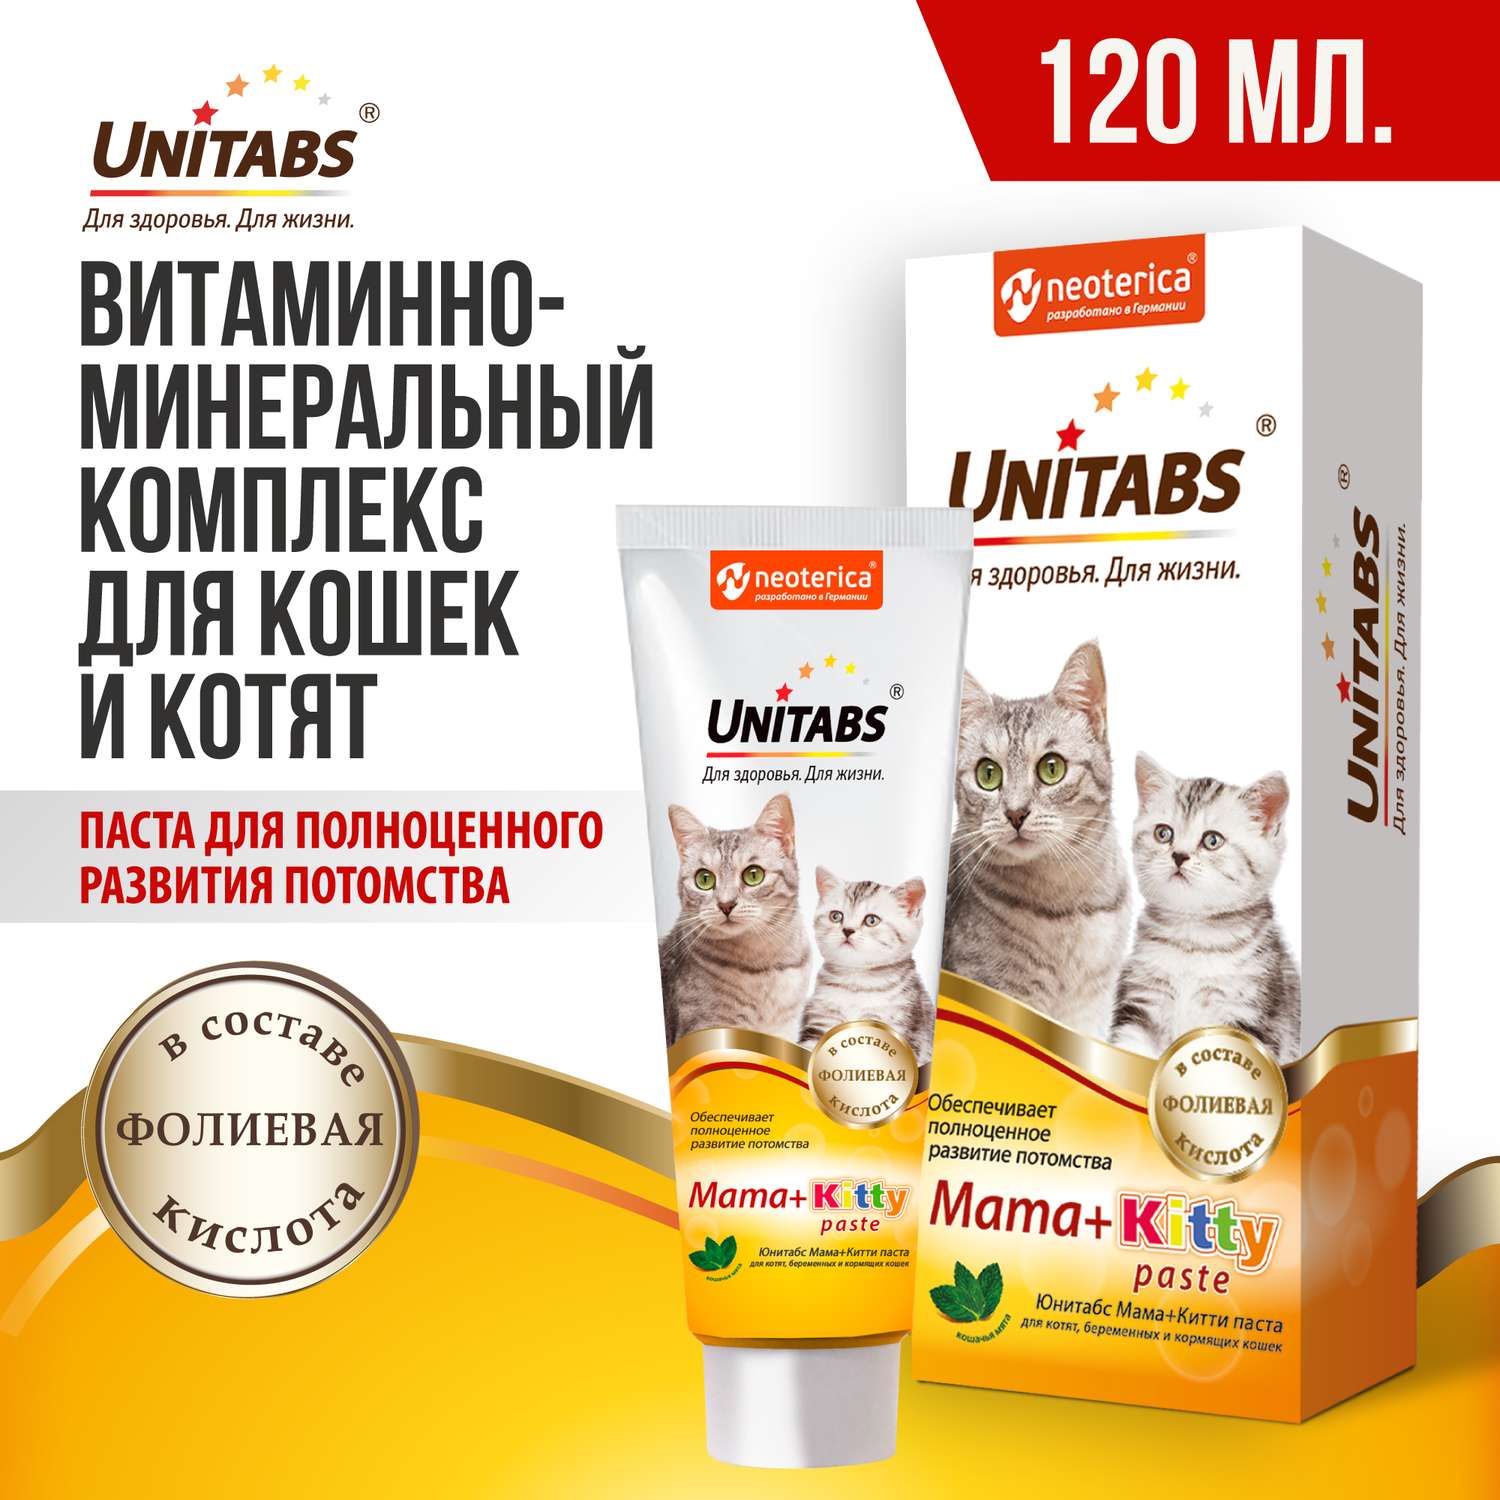 Витамины для кошек Unitabs Mama+Kitty c B9 паста 120мл - фото 2